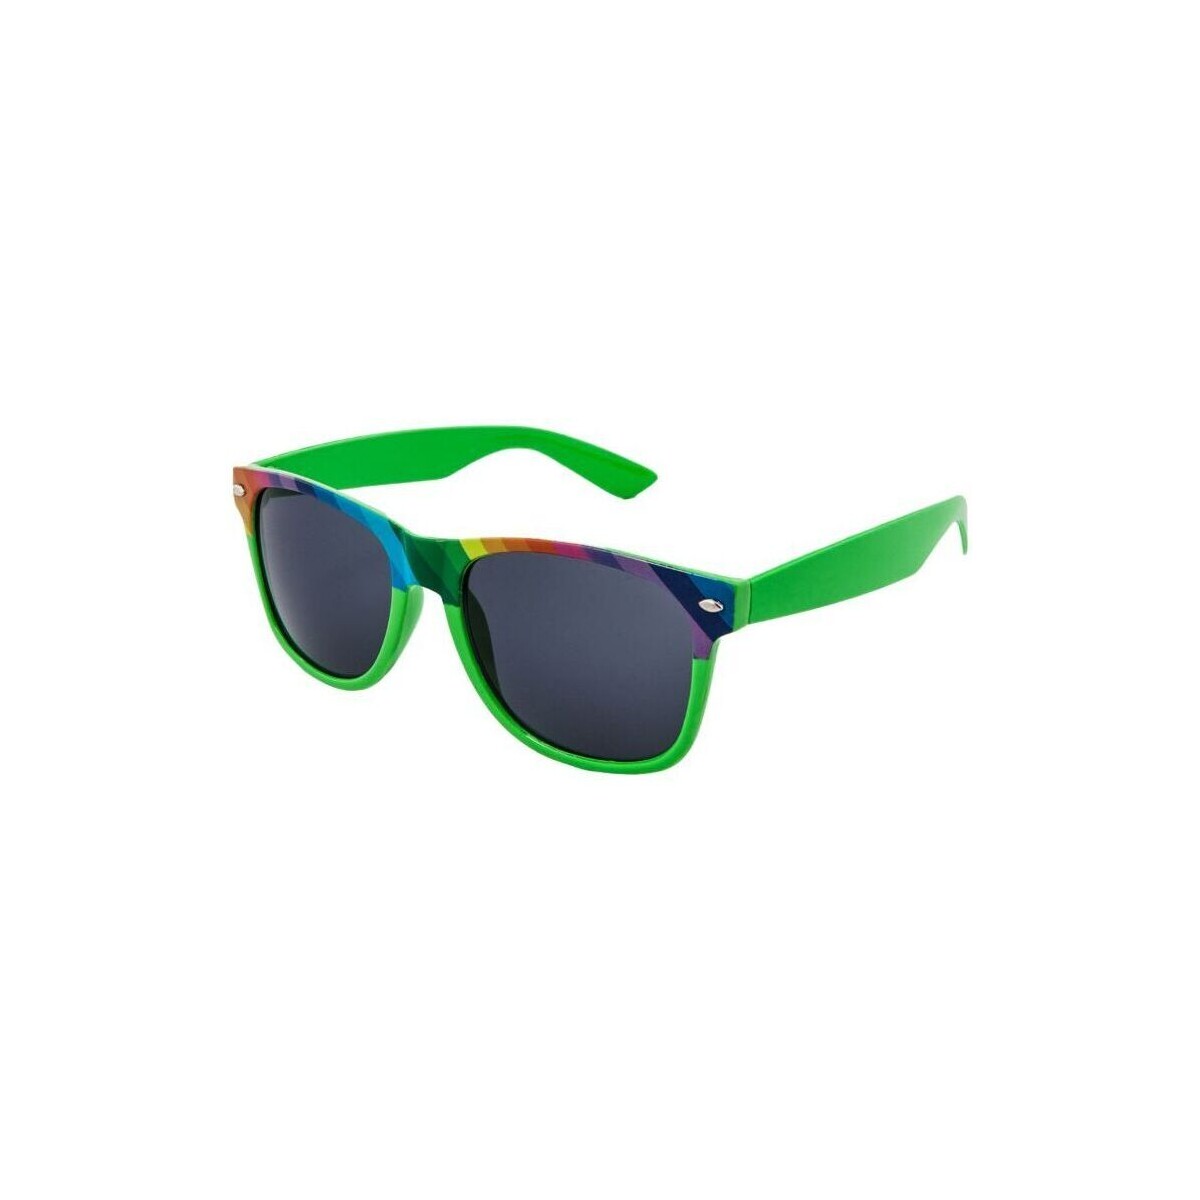 Hodinky & Bižuterie sluneční brýle Oem Sluneční brýle Nerd spectrum zelená Zelená